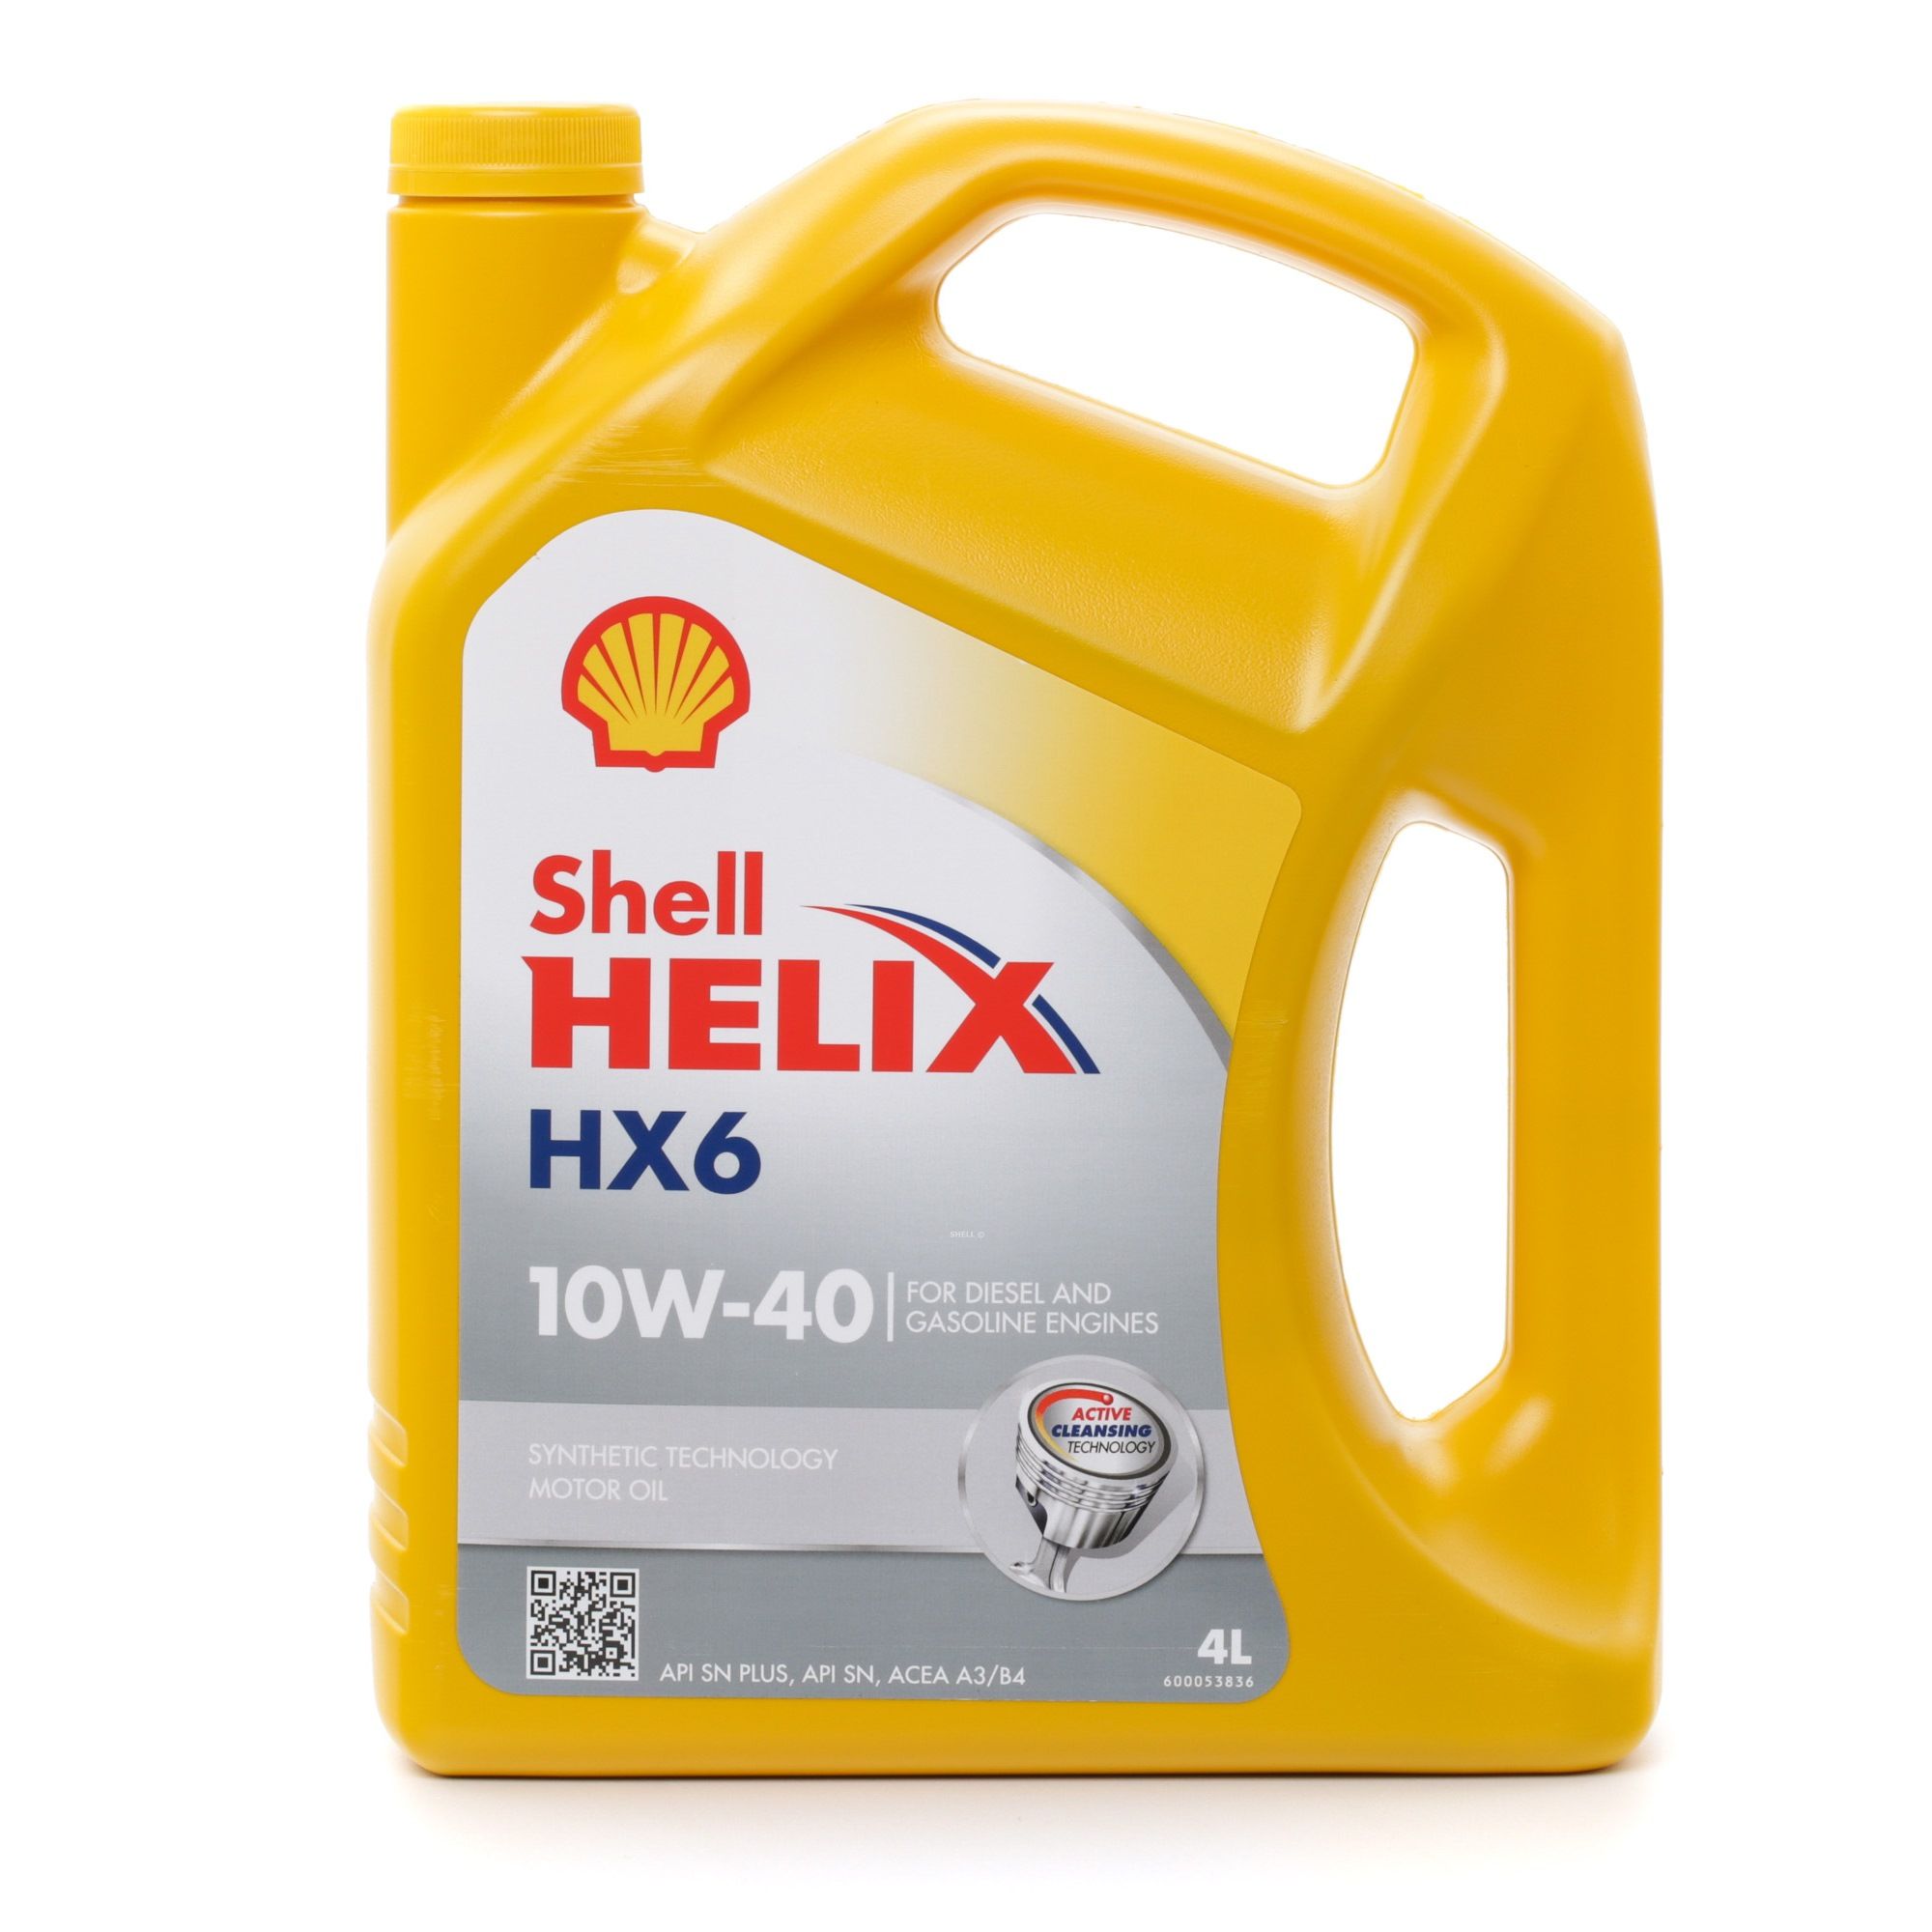 SHELL Helix, HX6 550039689/4 Moottoriöljy 10W-40, 4l, Osasynteettinen öljy